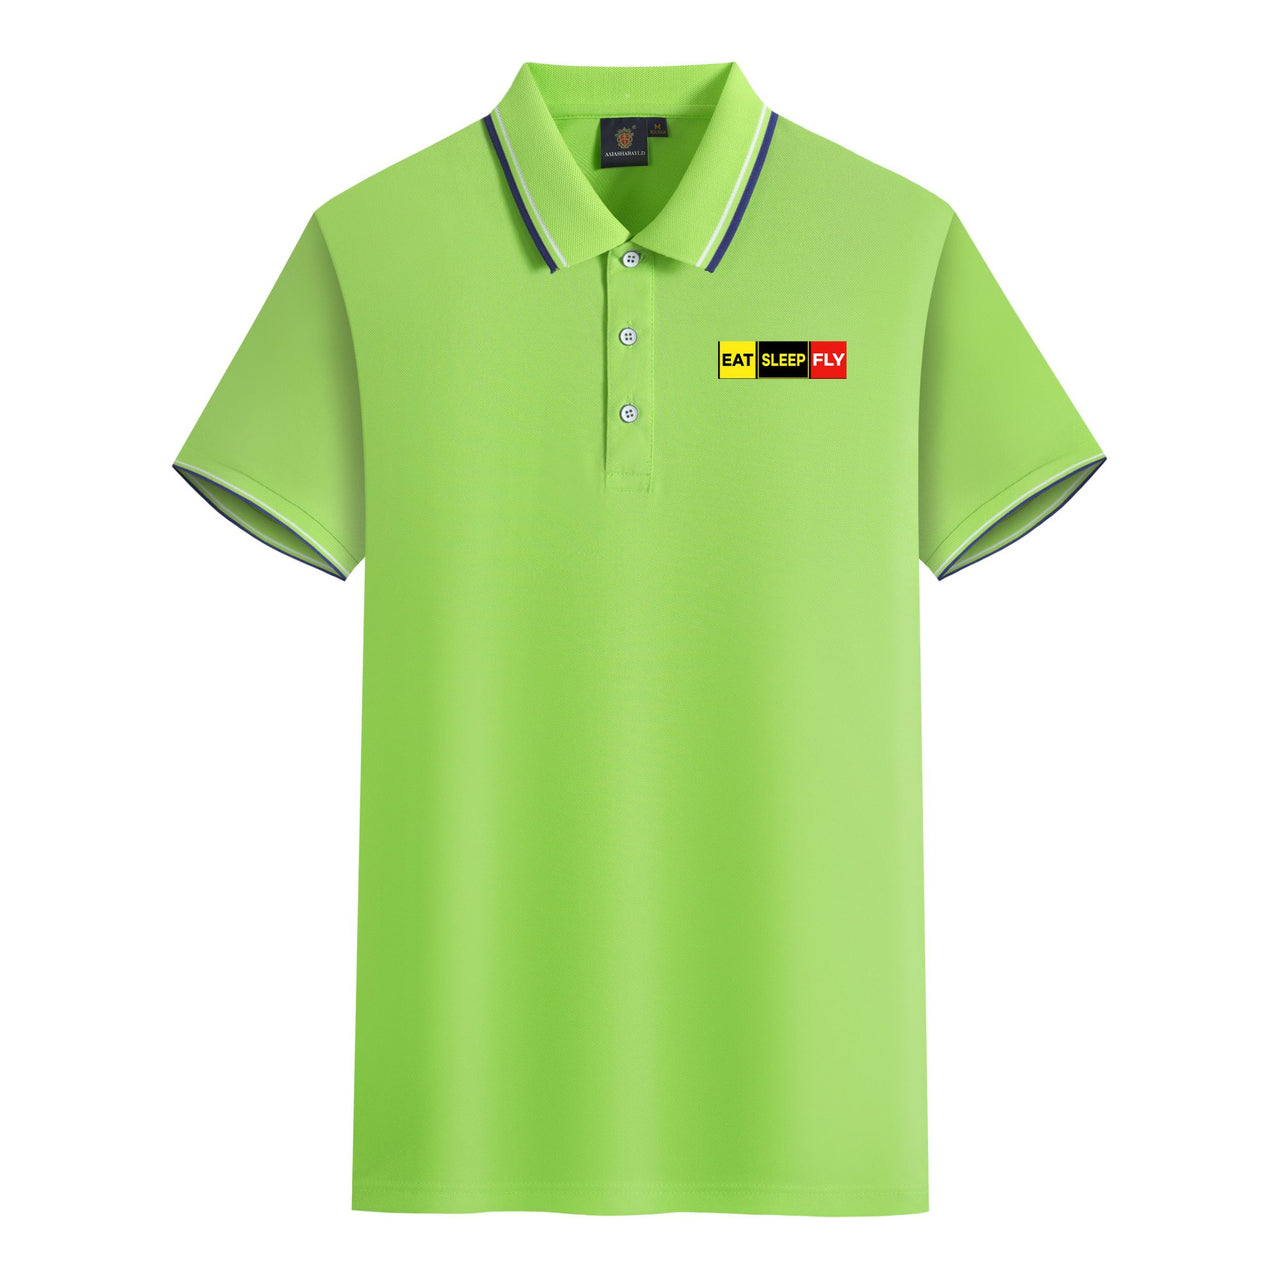 Eat Sleep Fly (Colourful) Designed Stylish Polo T-Shirts